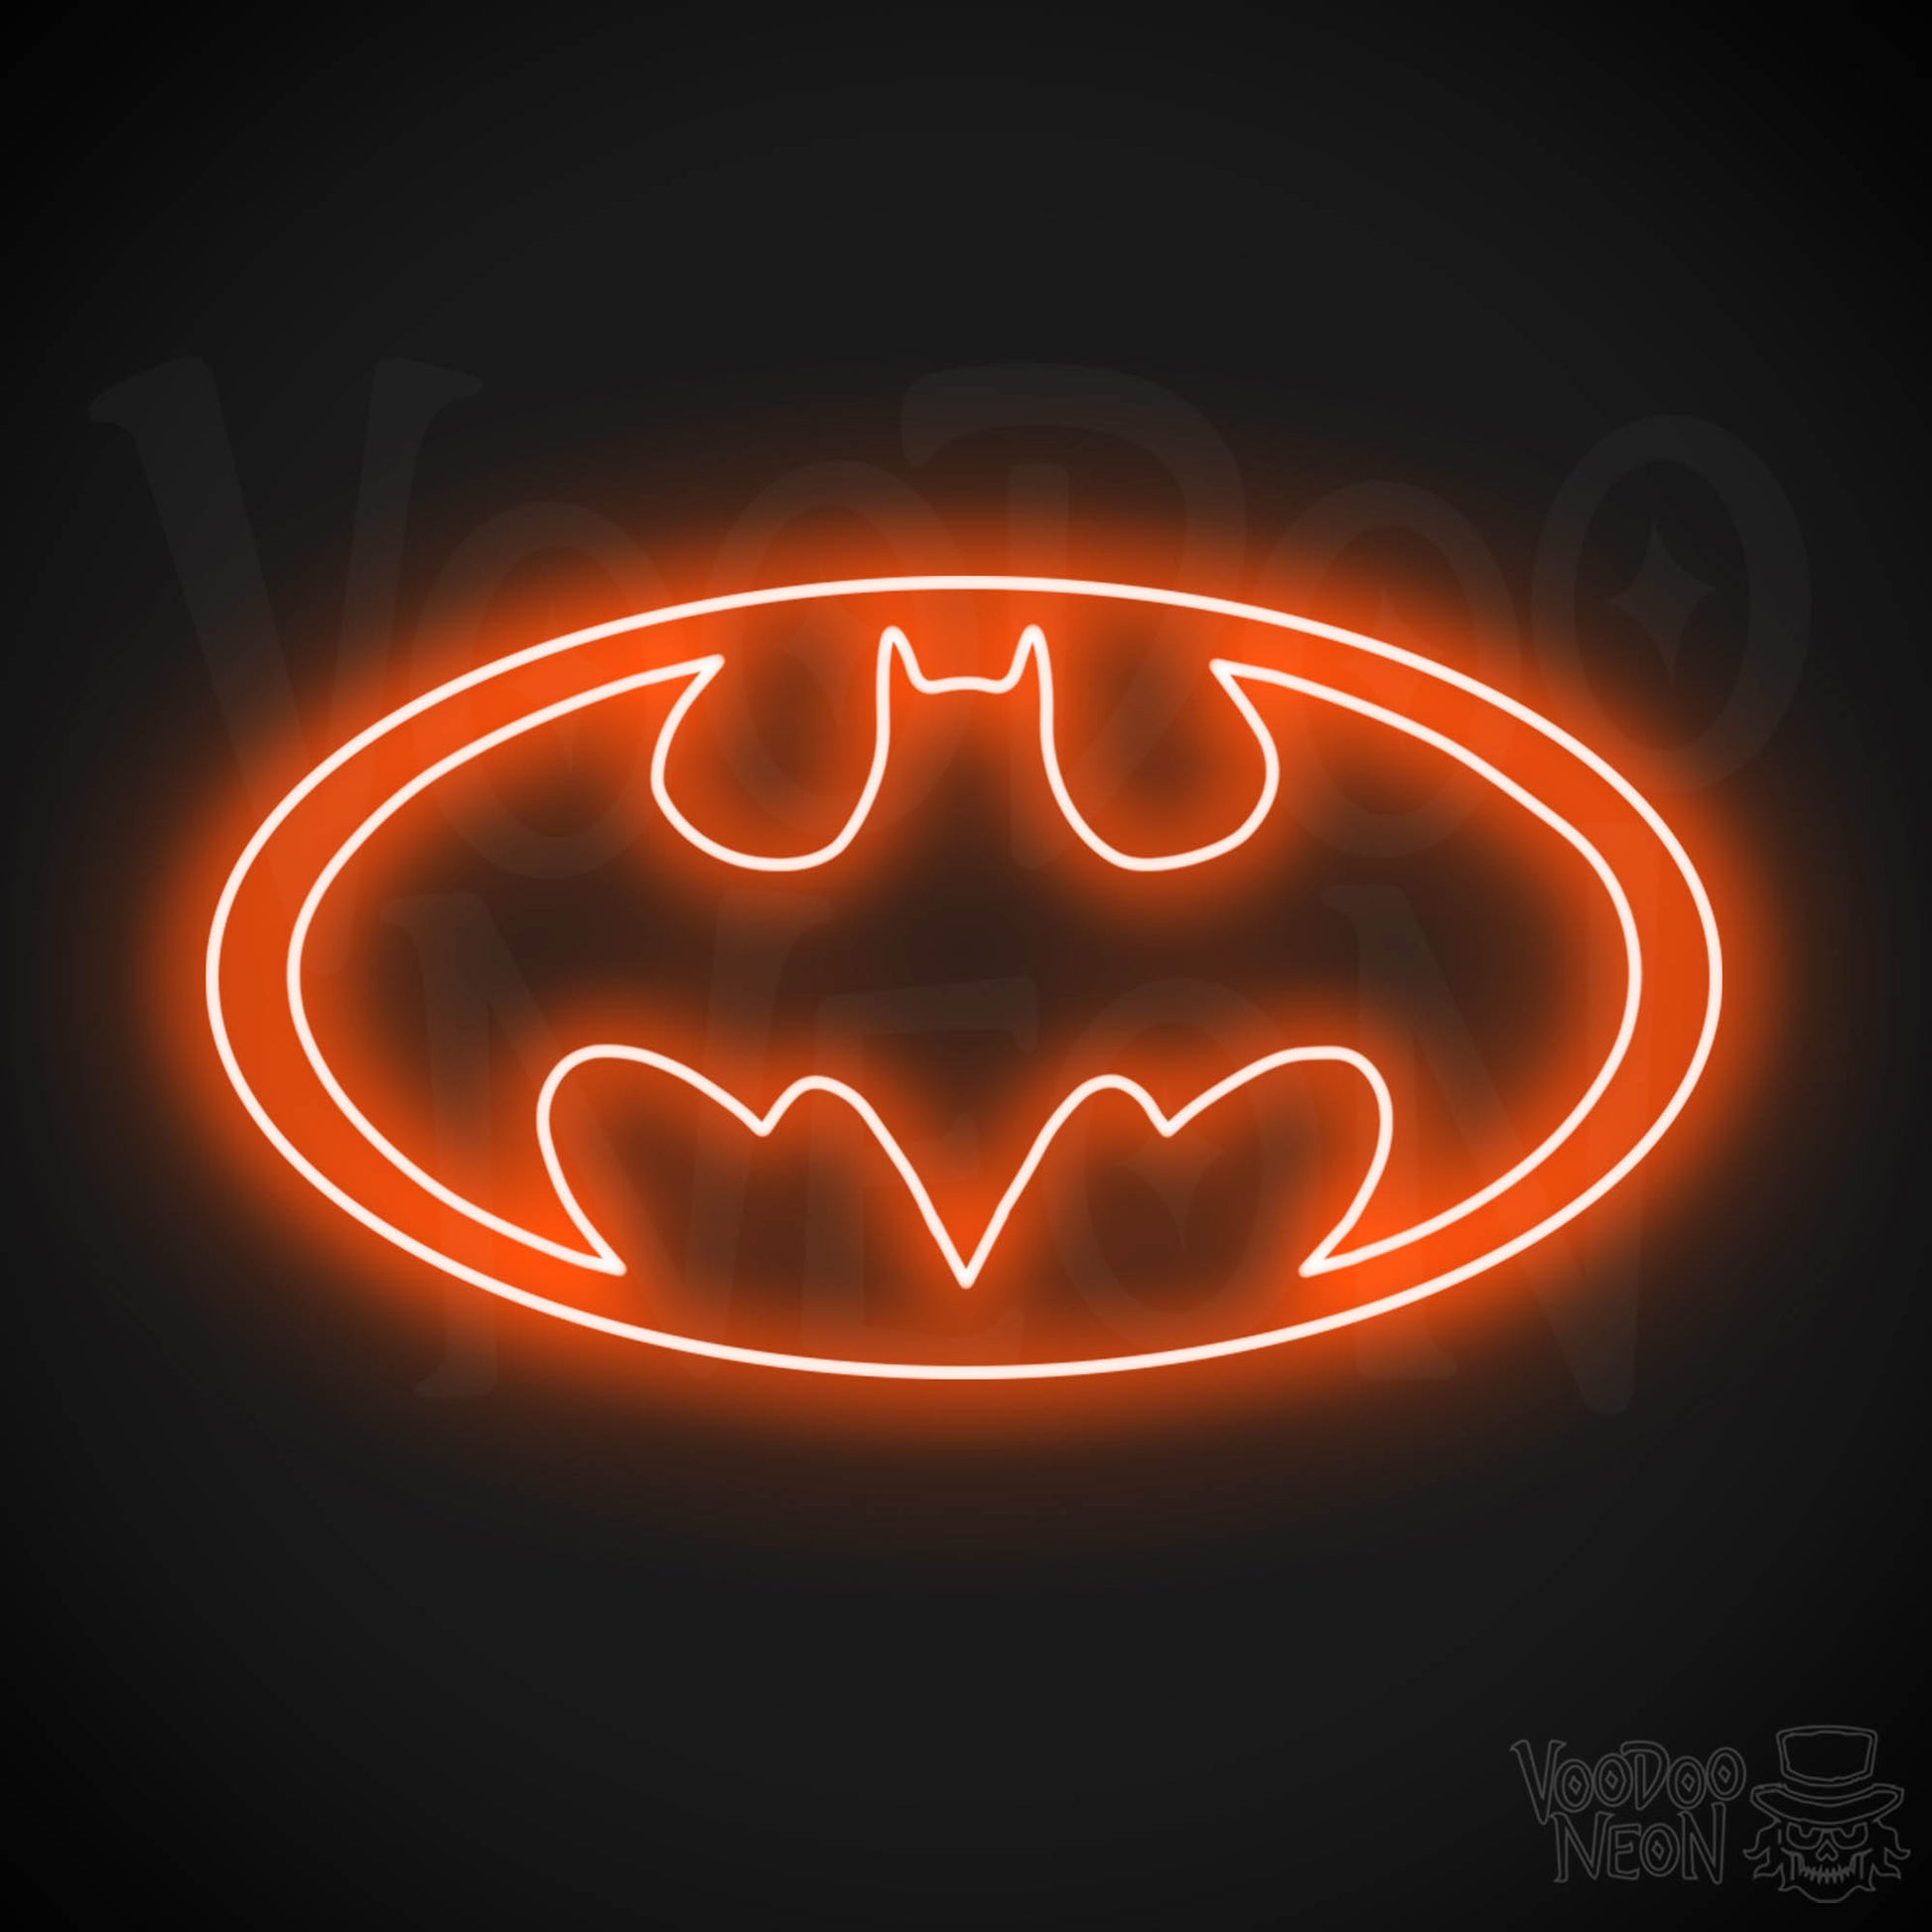 Batman Neon Sign - Batman Sign - Batman Light - Batman Symbol Wall Art - LED Sign - Color Orange